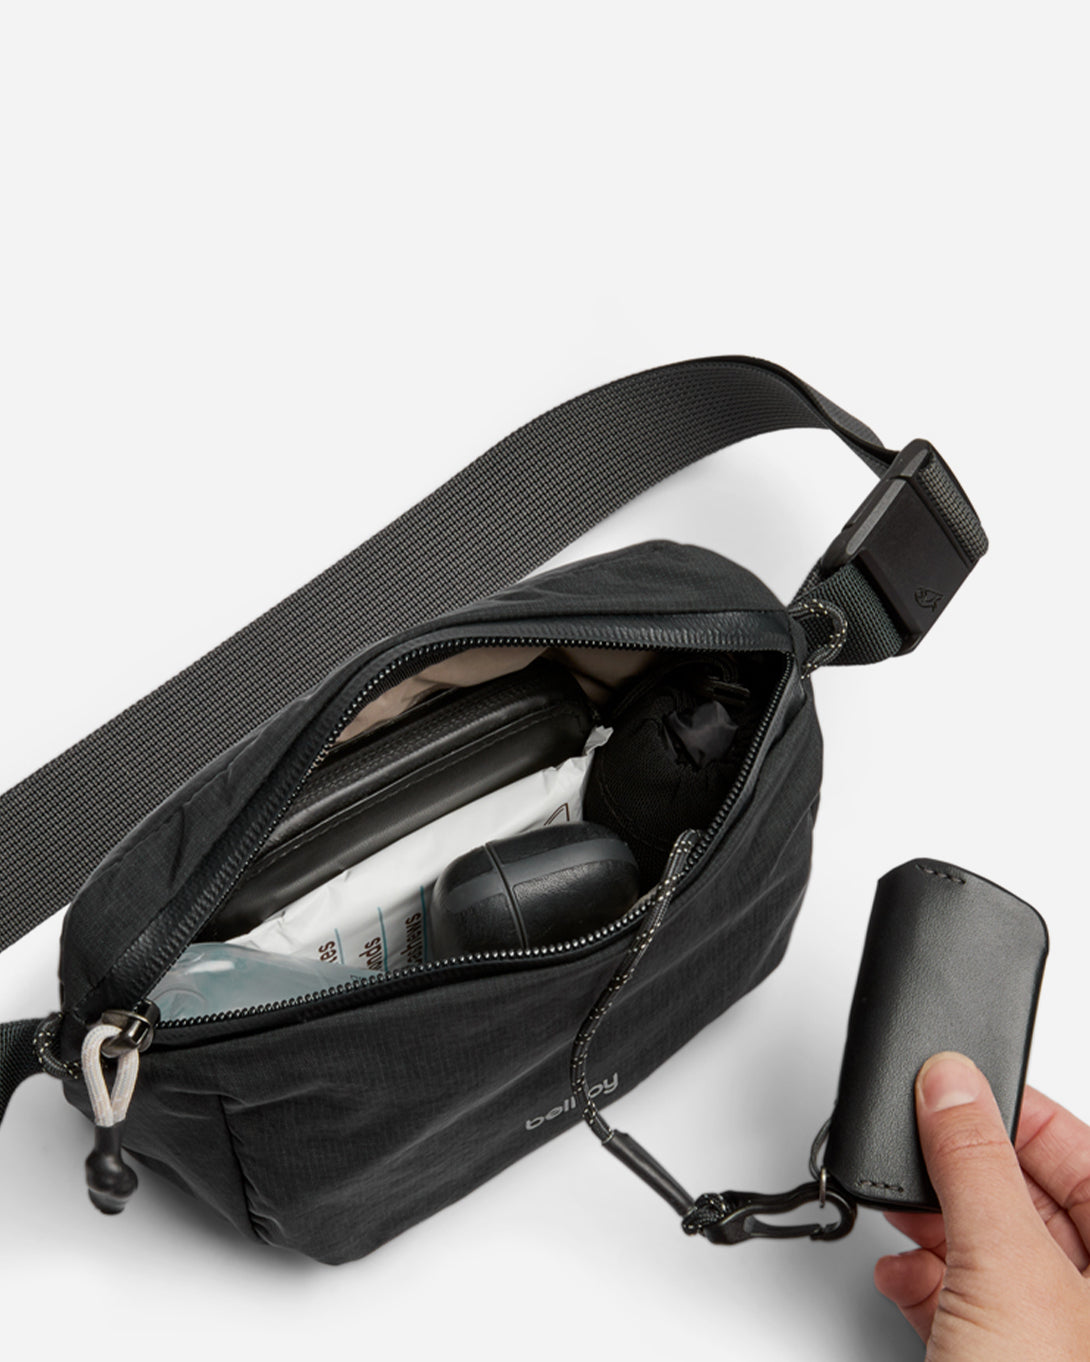 Black Lite Belt Bag Bellroy Utility Bag